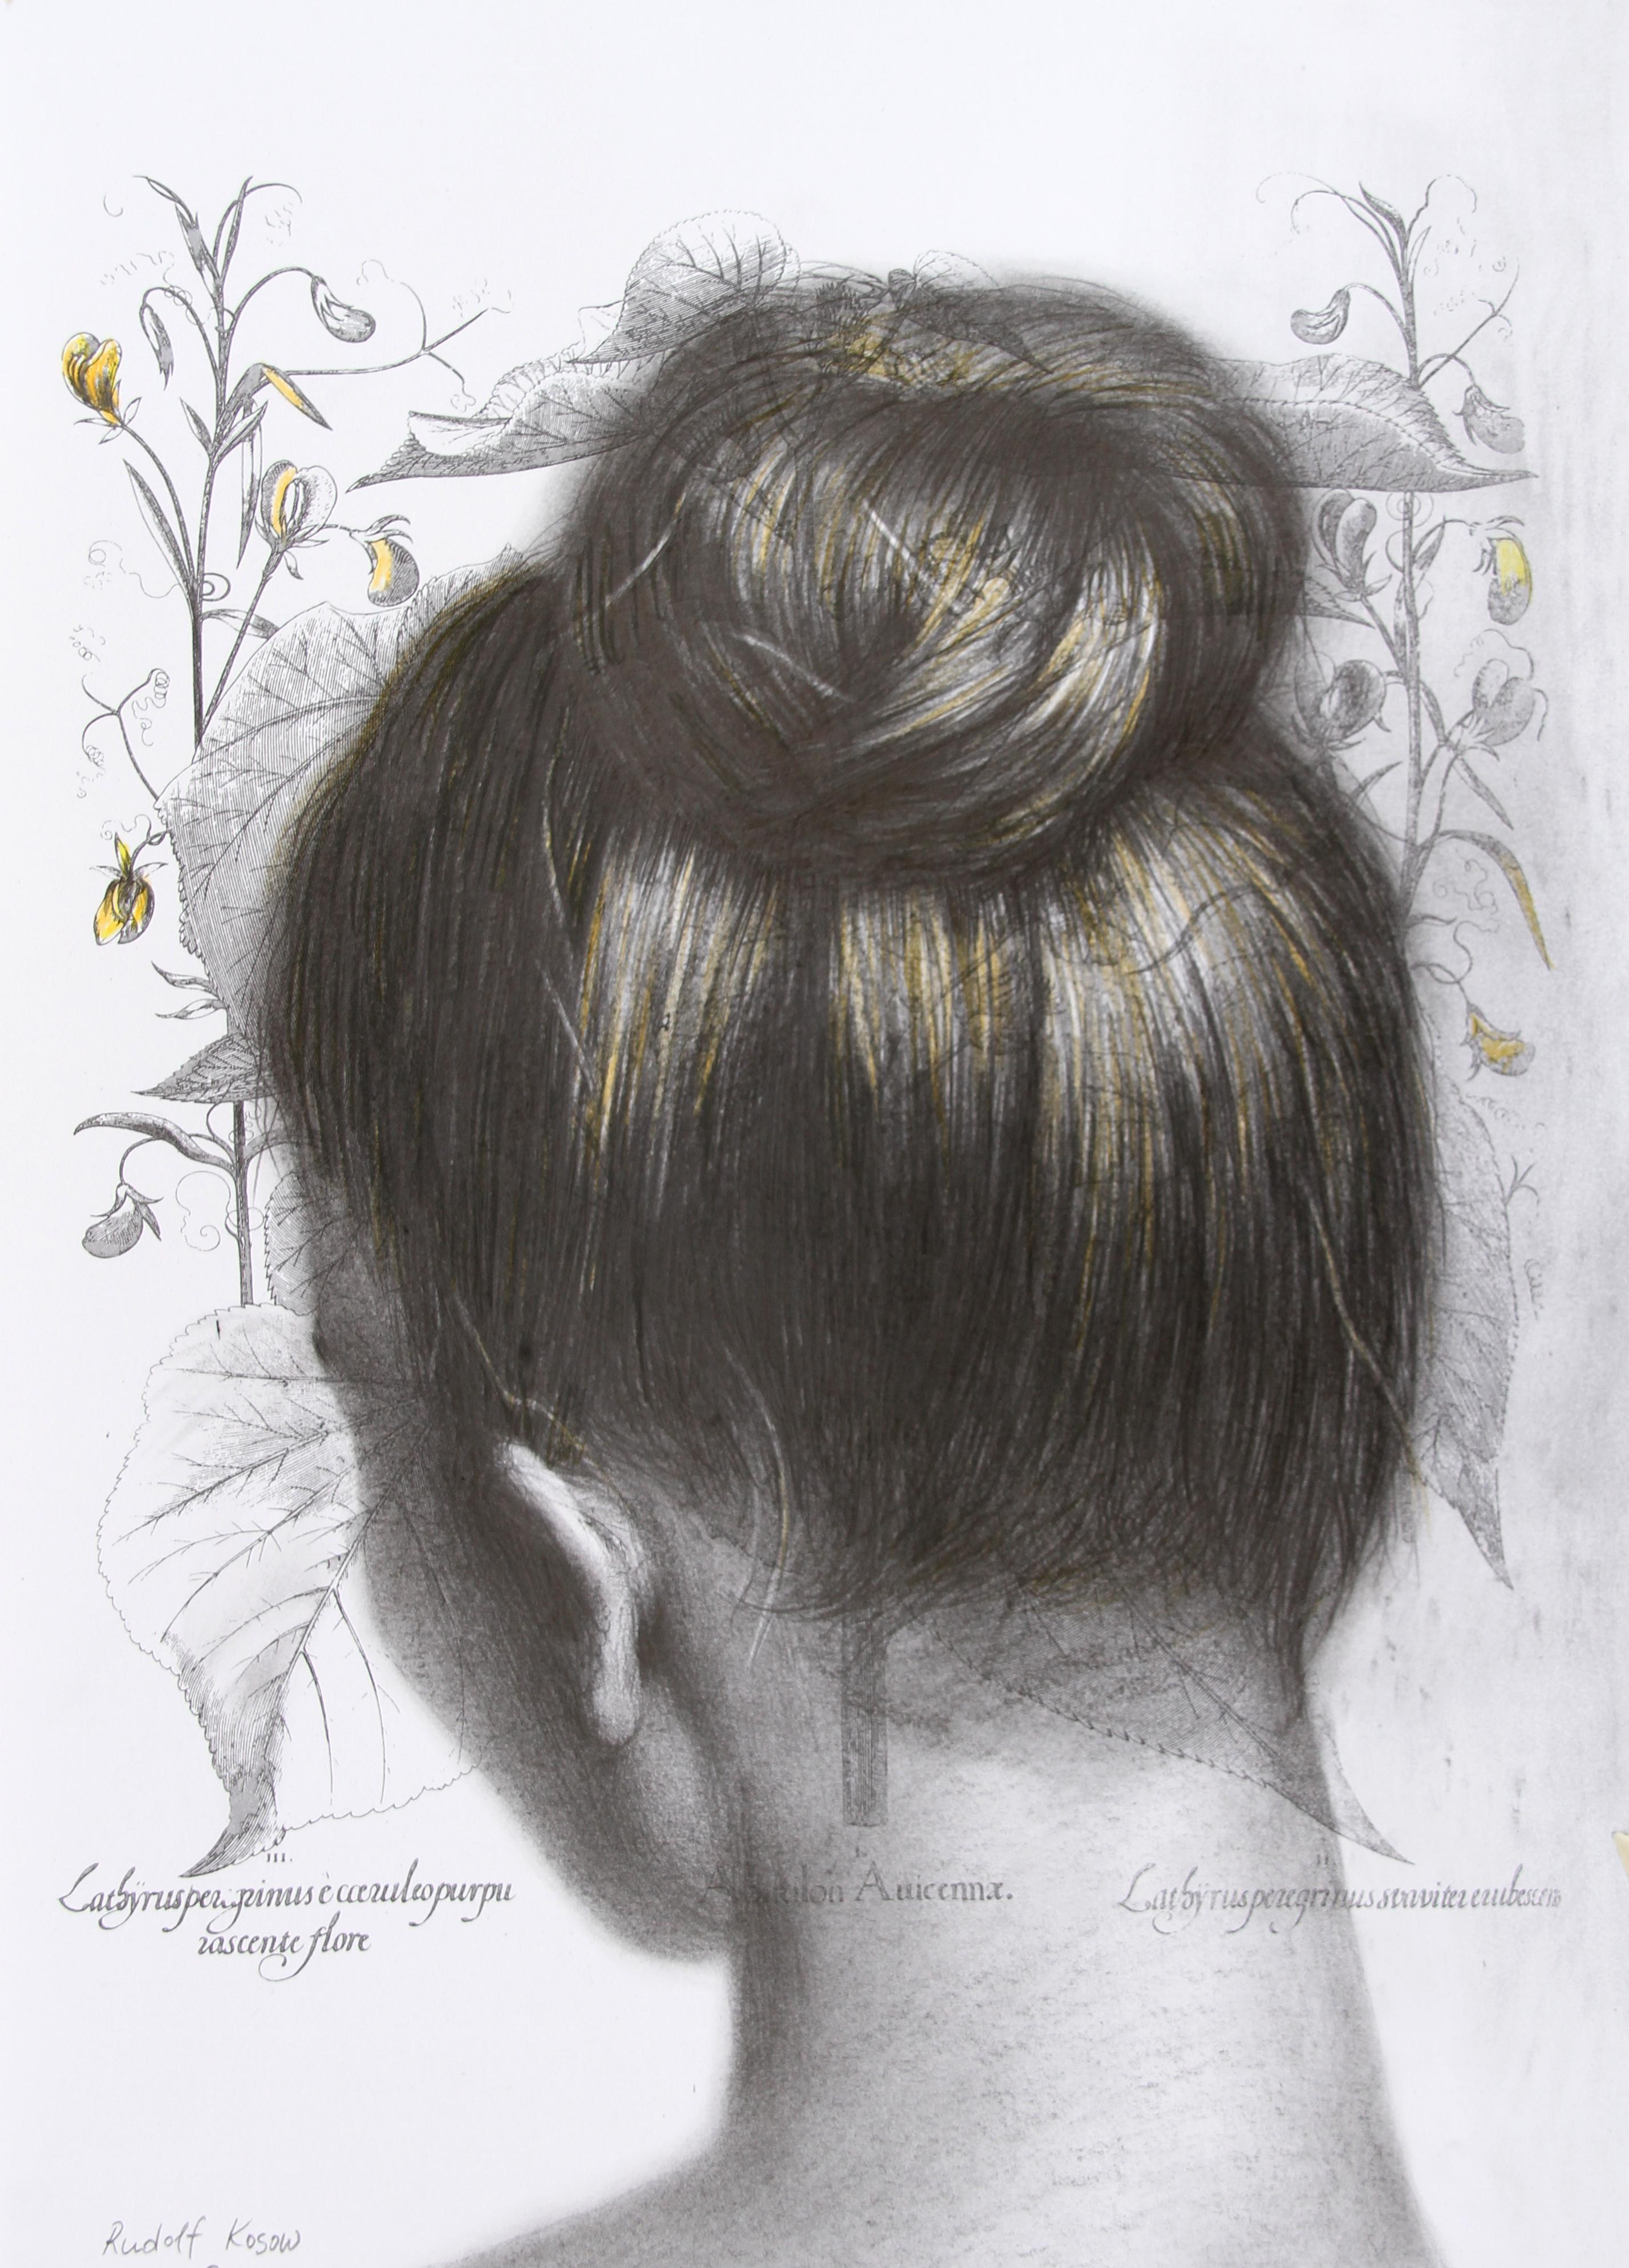 Abutilon  Auicennae (drawing paper vintage girl chignon portrait hair bun neck)